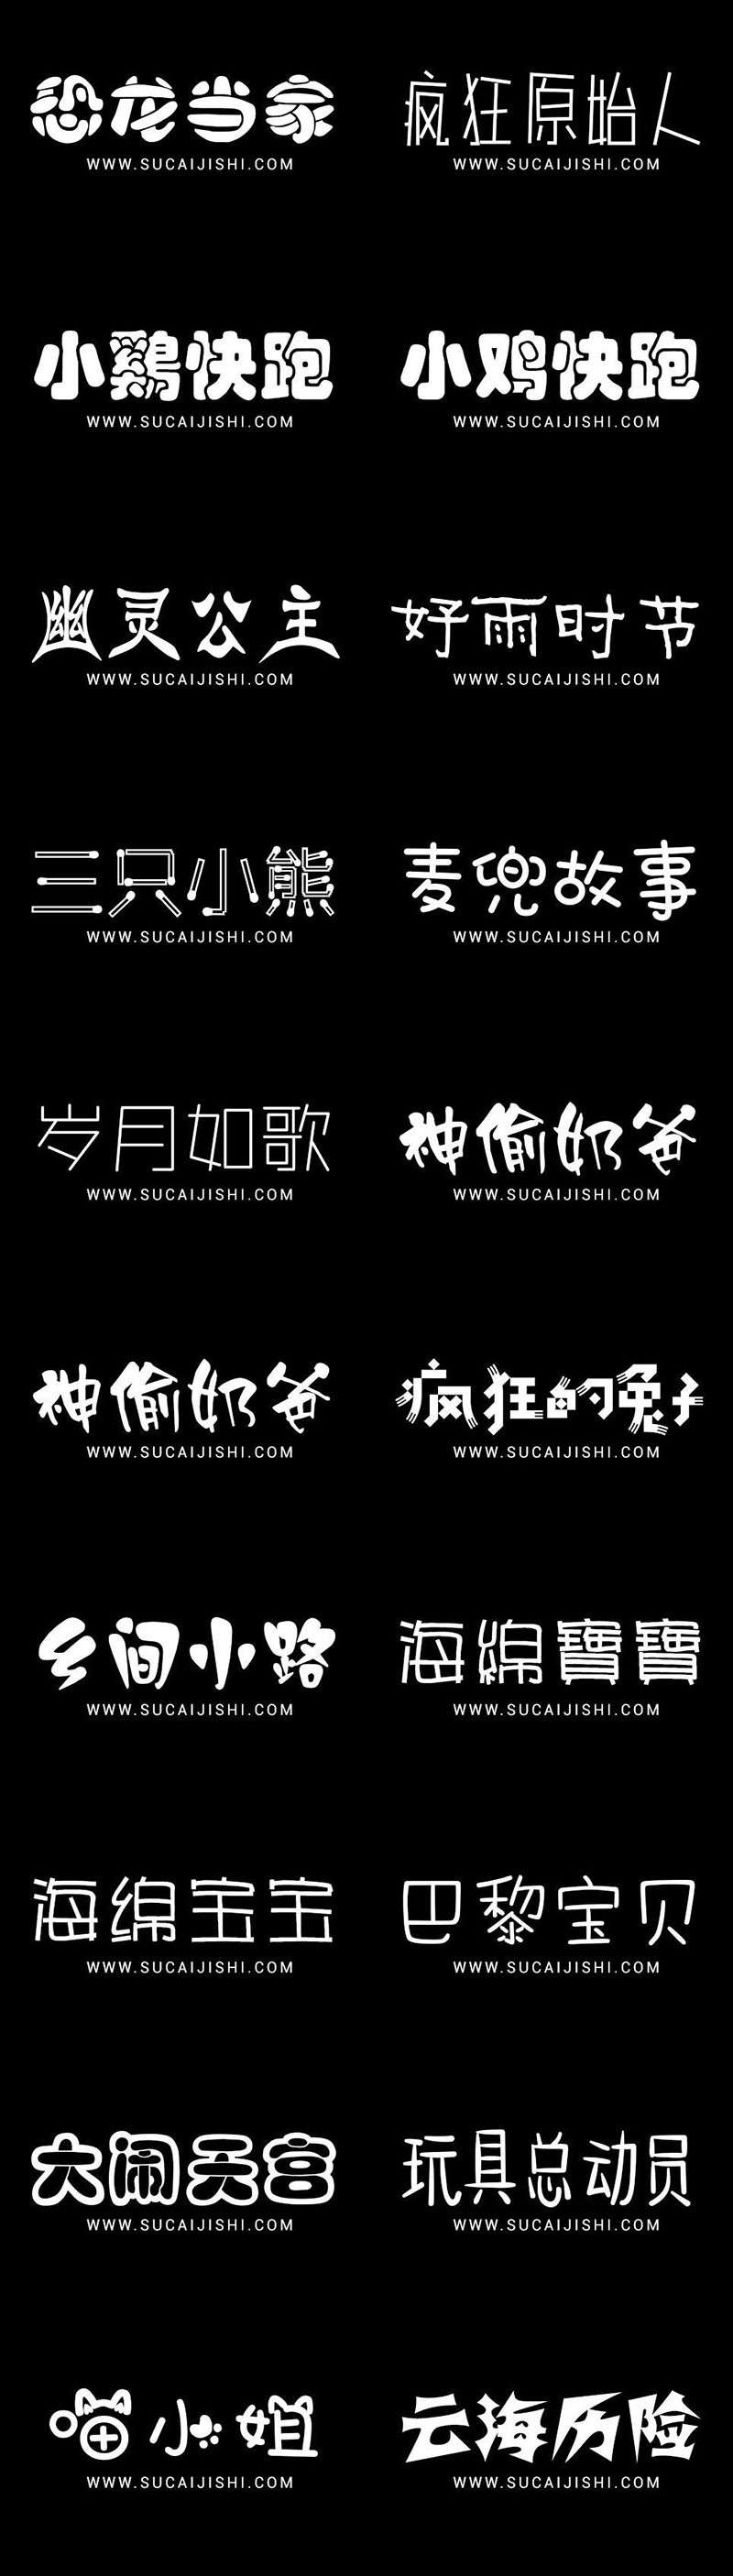 200+可爱卡通中文字体合集